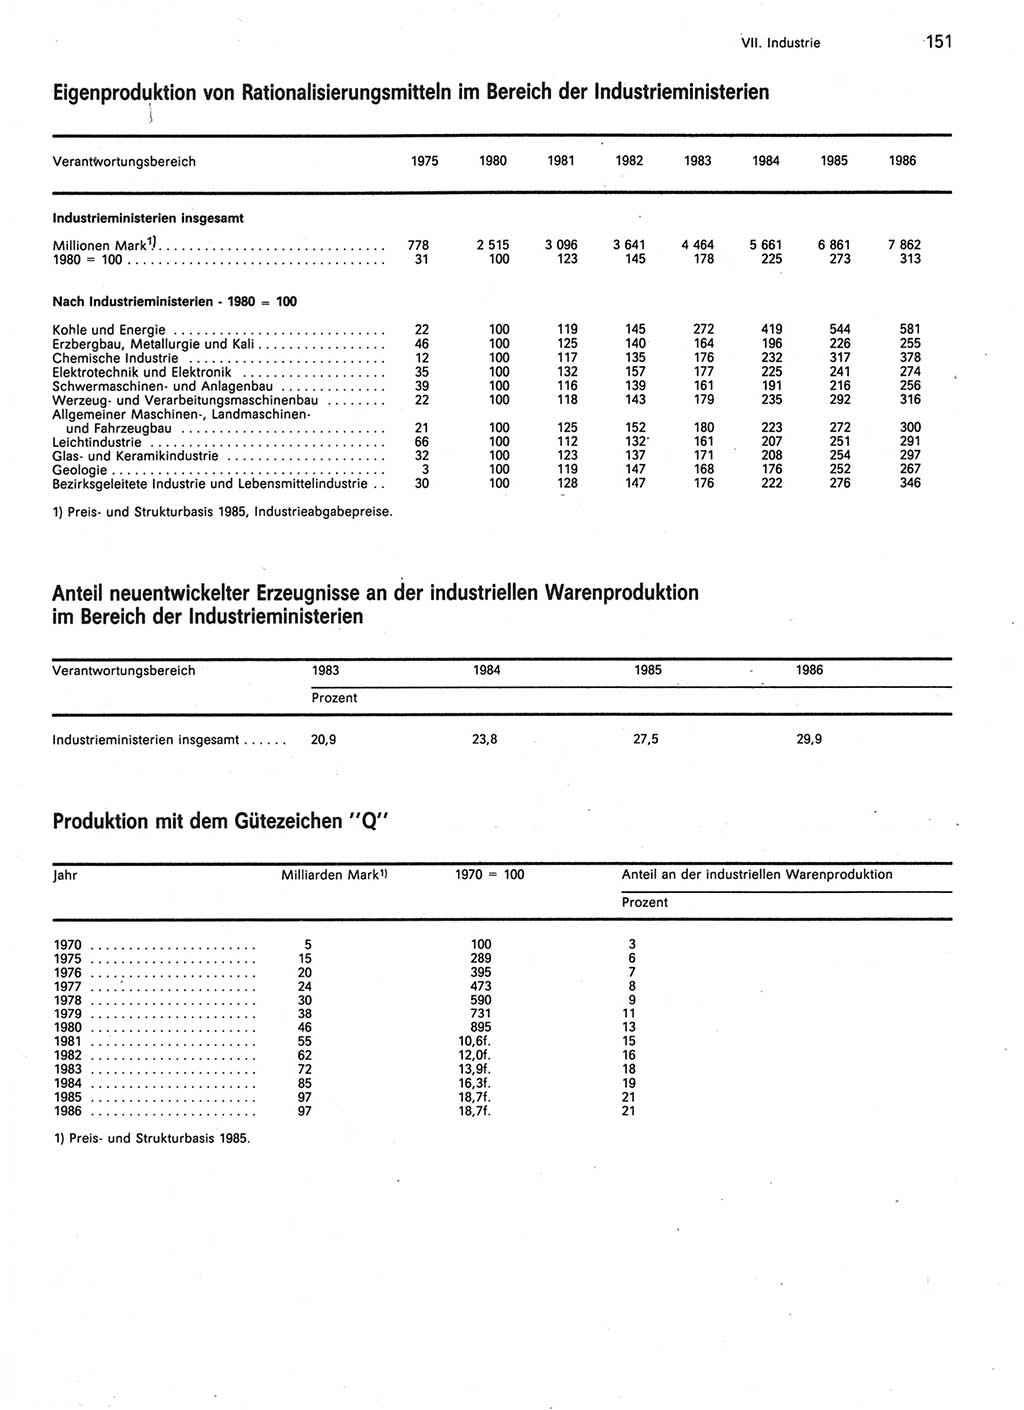 Statistisches Jahrbuch der Deutschen Demokratischen Republik (DDR) 1987, Seite 151 (Stat. Jb. DDR 1987, S. 151)